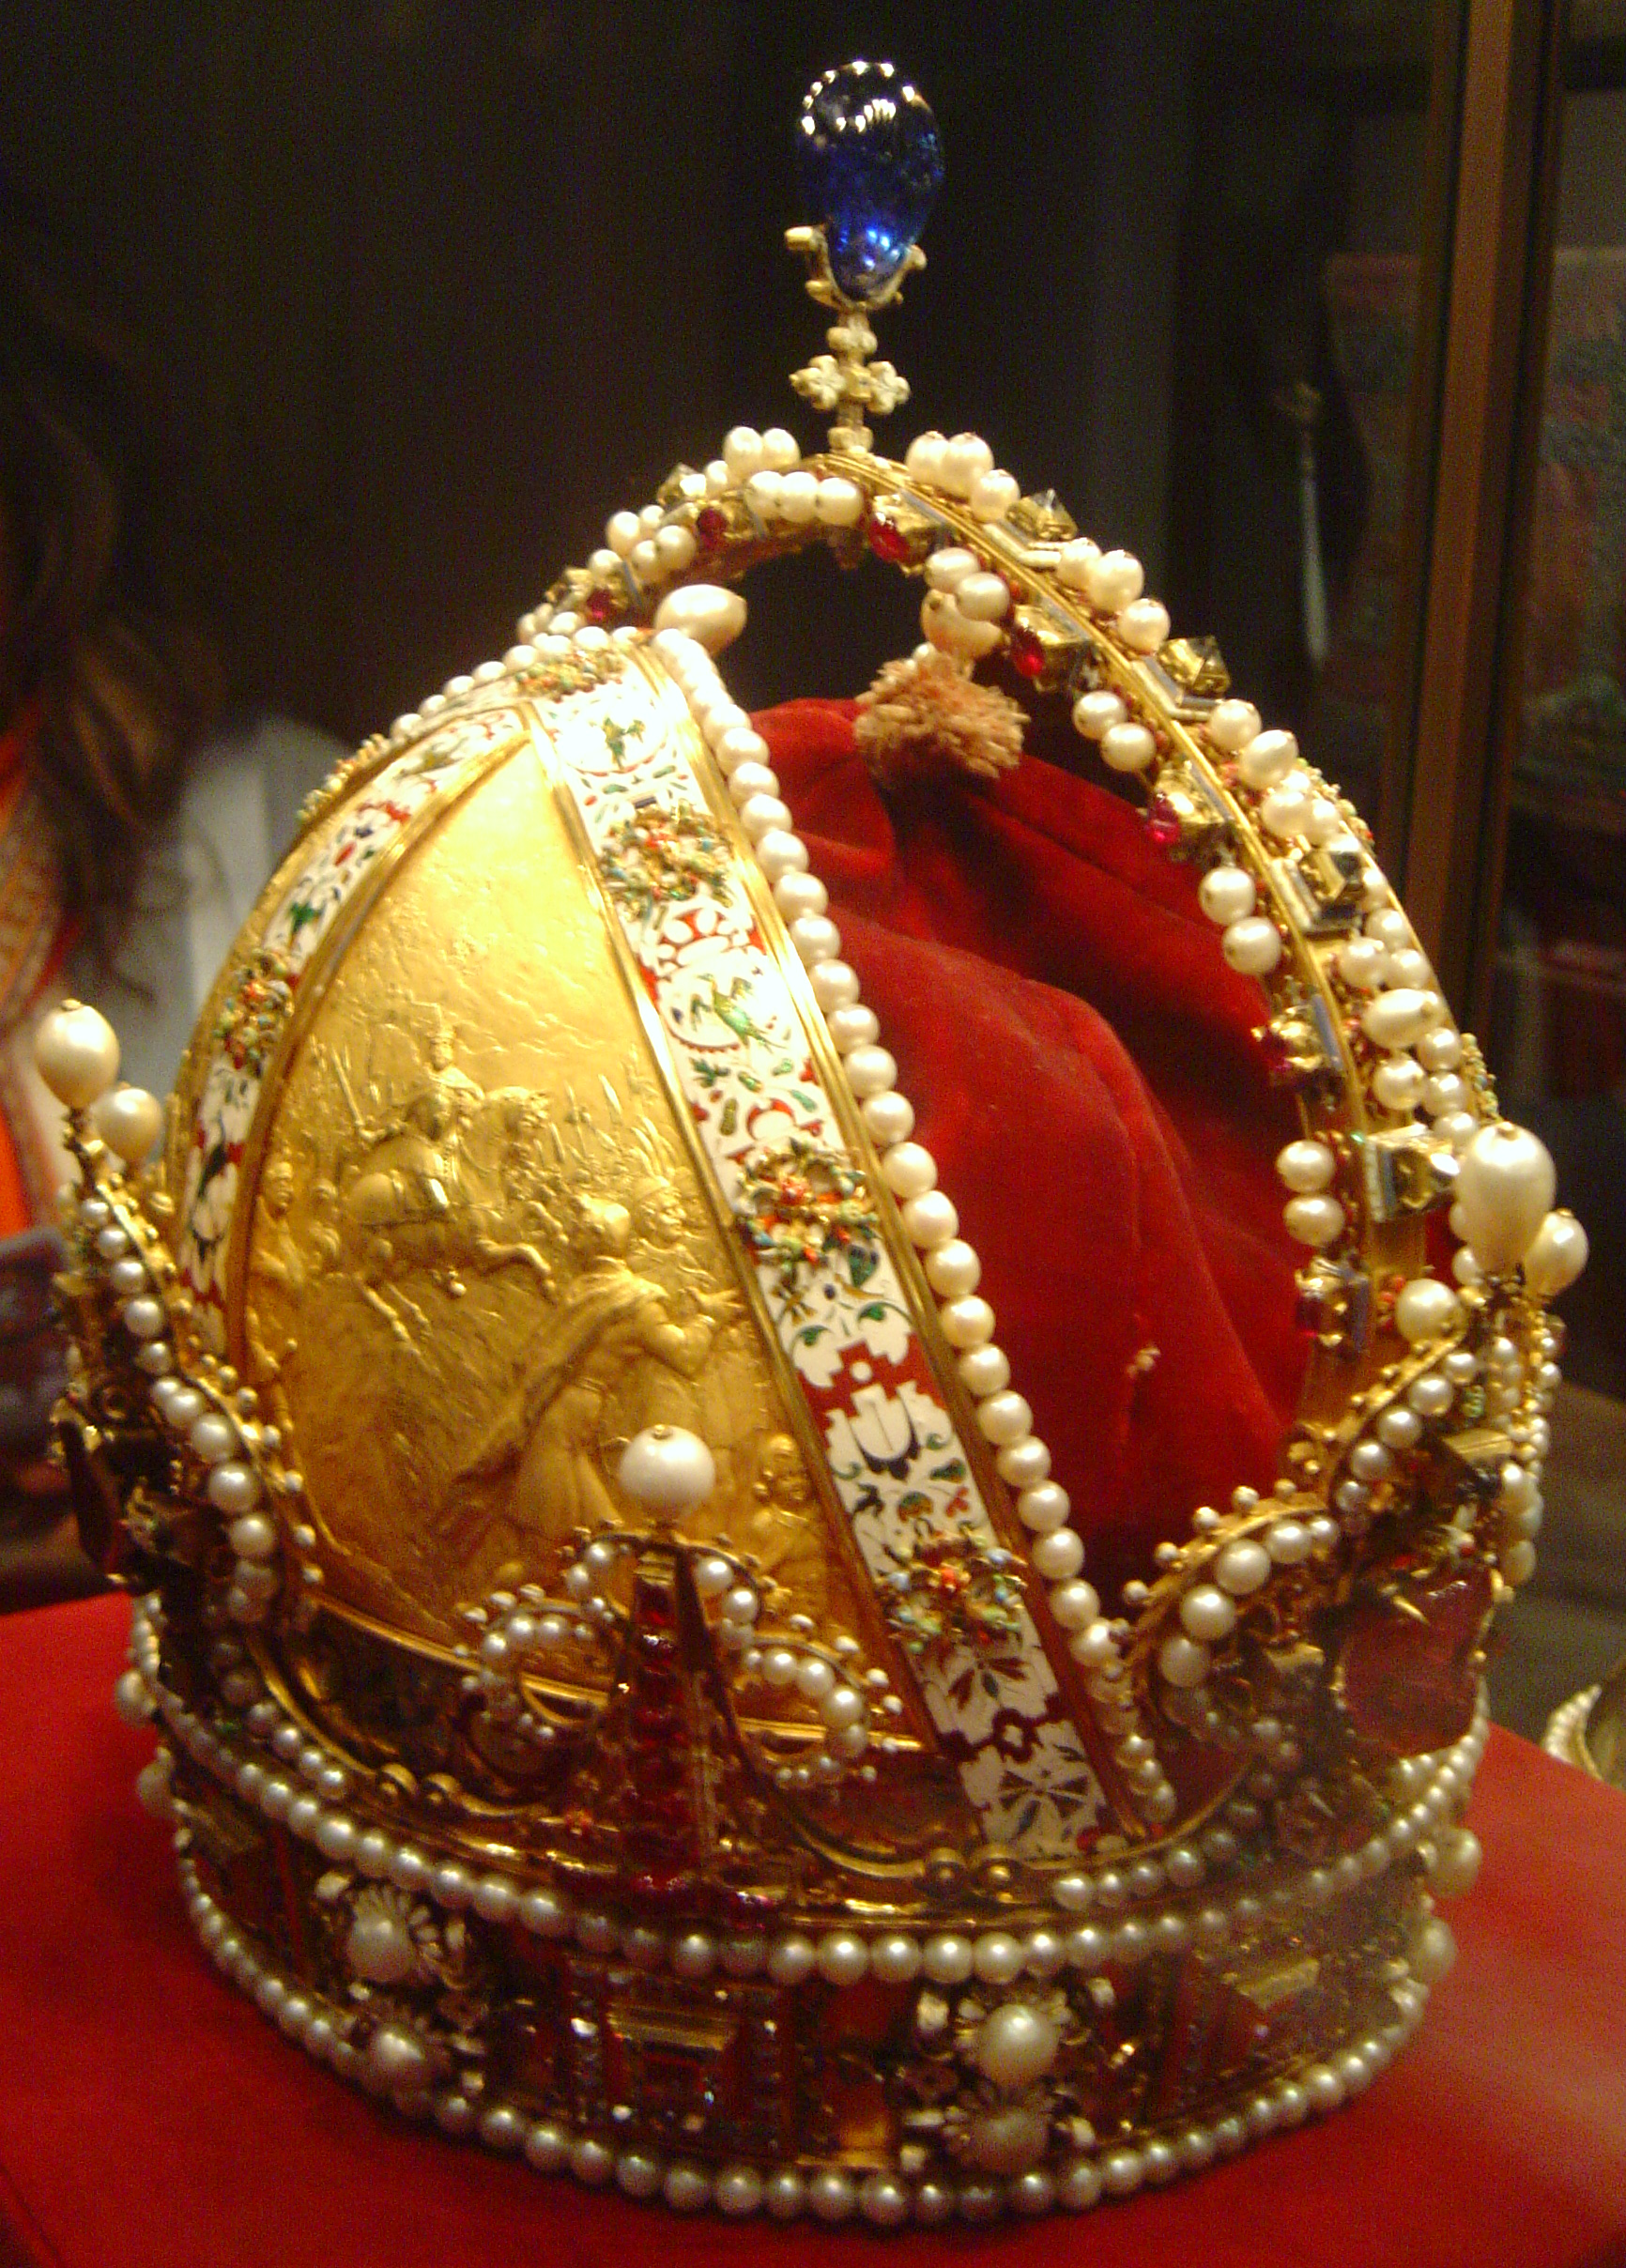 File:Austrian imperial crown dsc02787.jpg - Wikimedia Commons